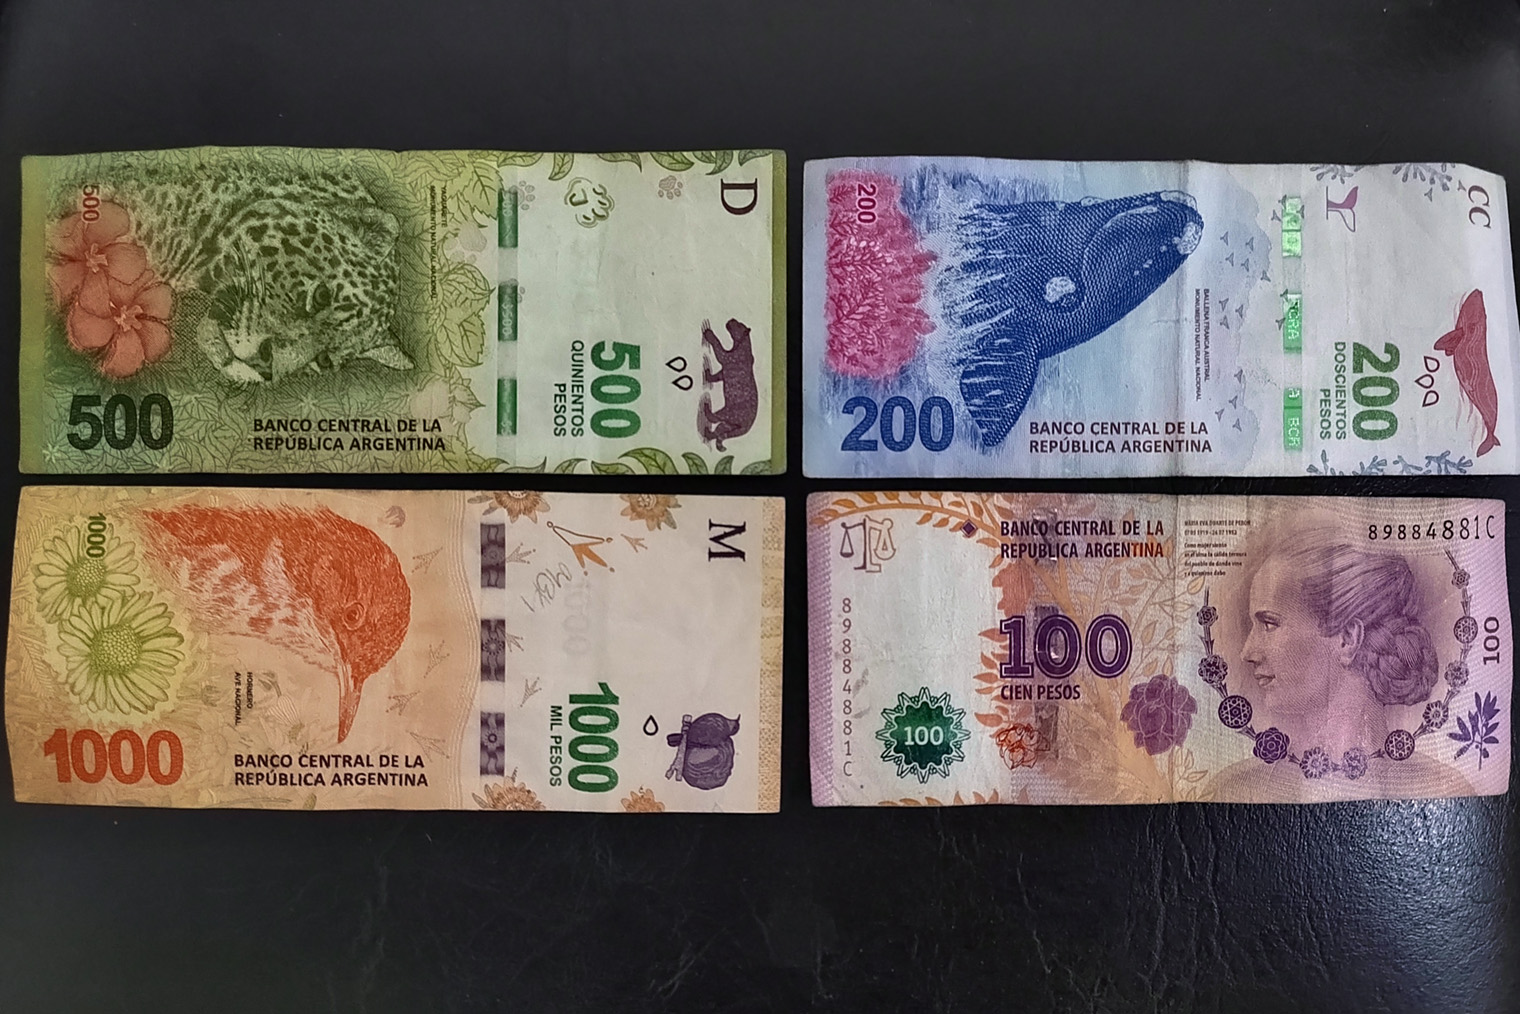 В Аргентине почти не используют монеты. Это непривычно, зато те, кто любит коллекционировать банкноты, будут в восторге: купюр много, все очень красивые